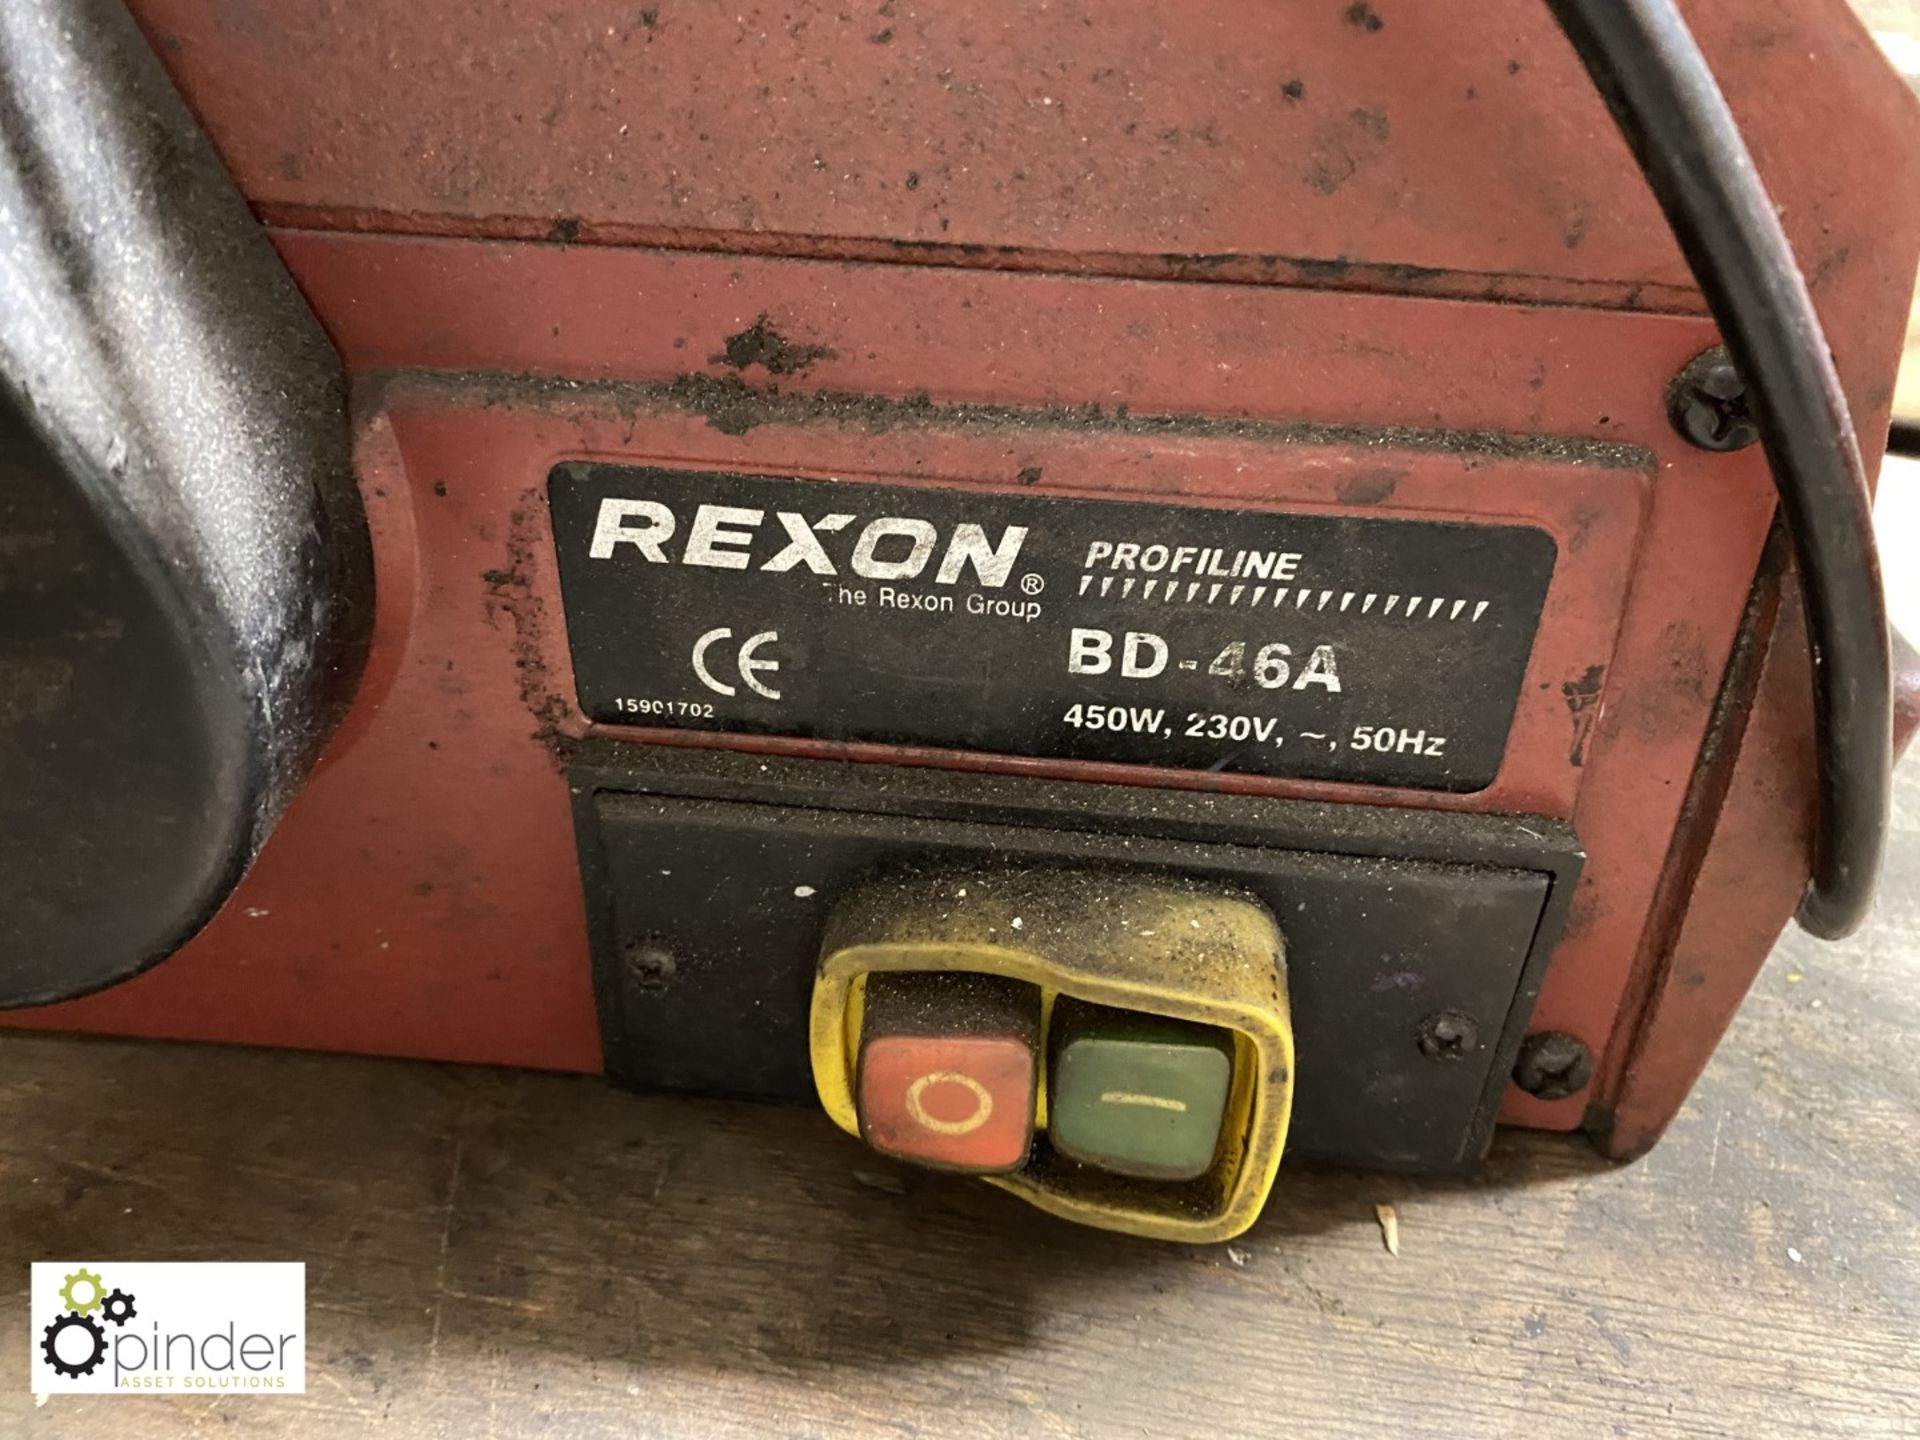 Rexon BD-46A Belt and Disc Sander, 240volts - Bild 3 aus 3